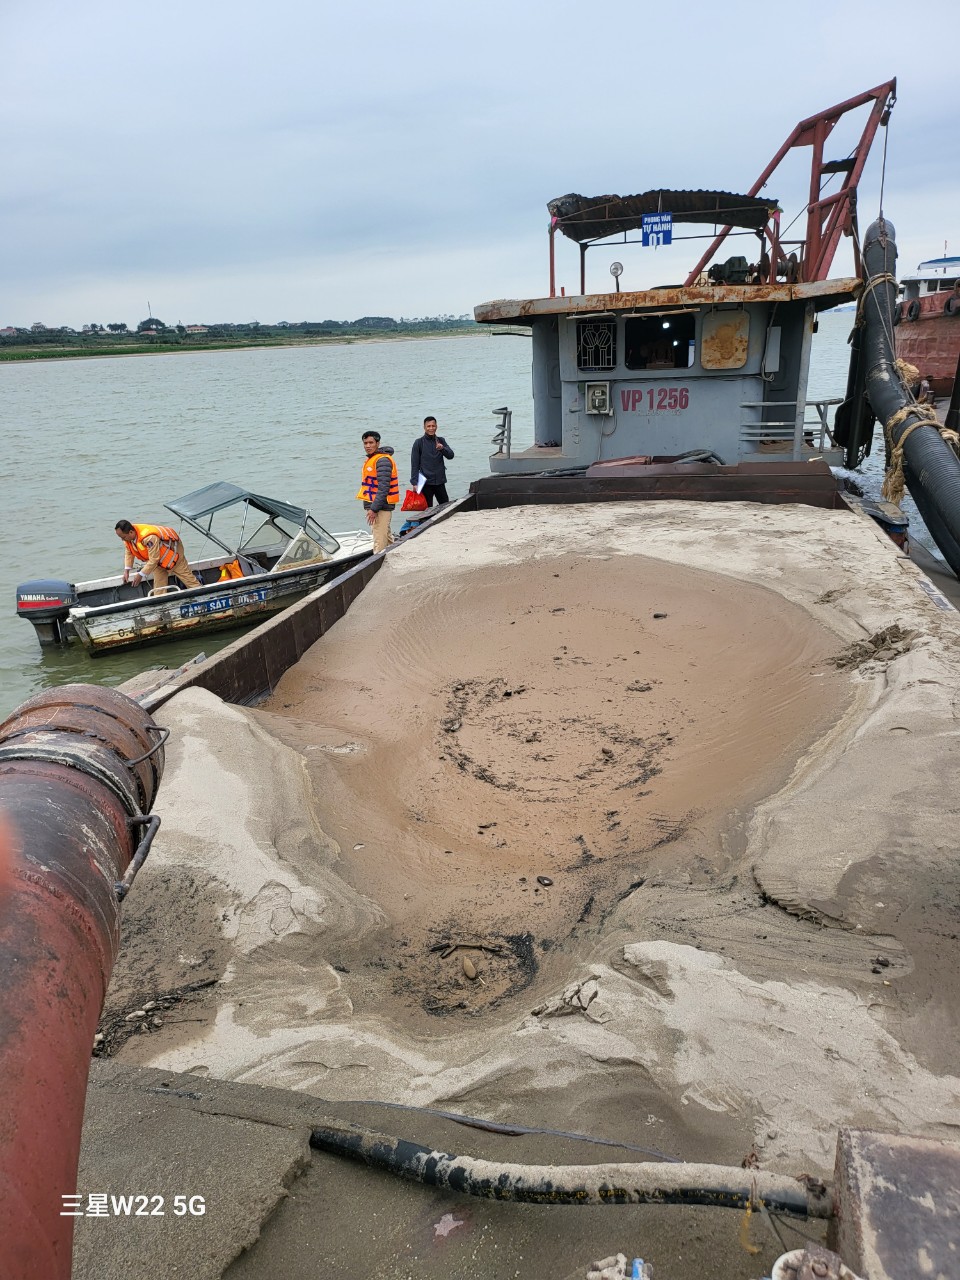 Cục CSGT bắt quả tang tàu bơm hút cát trái phép, thu giữ hơn 100 khối cát- Ảnh 2.